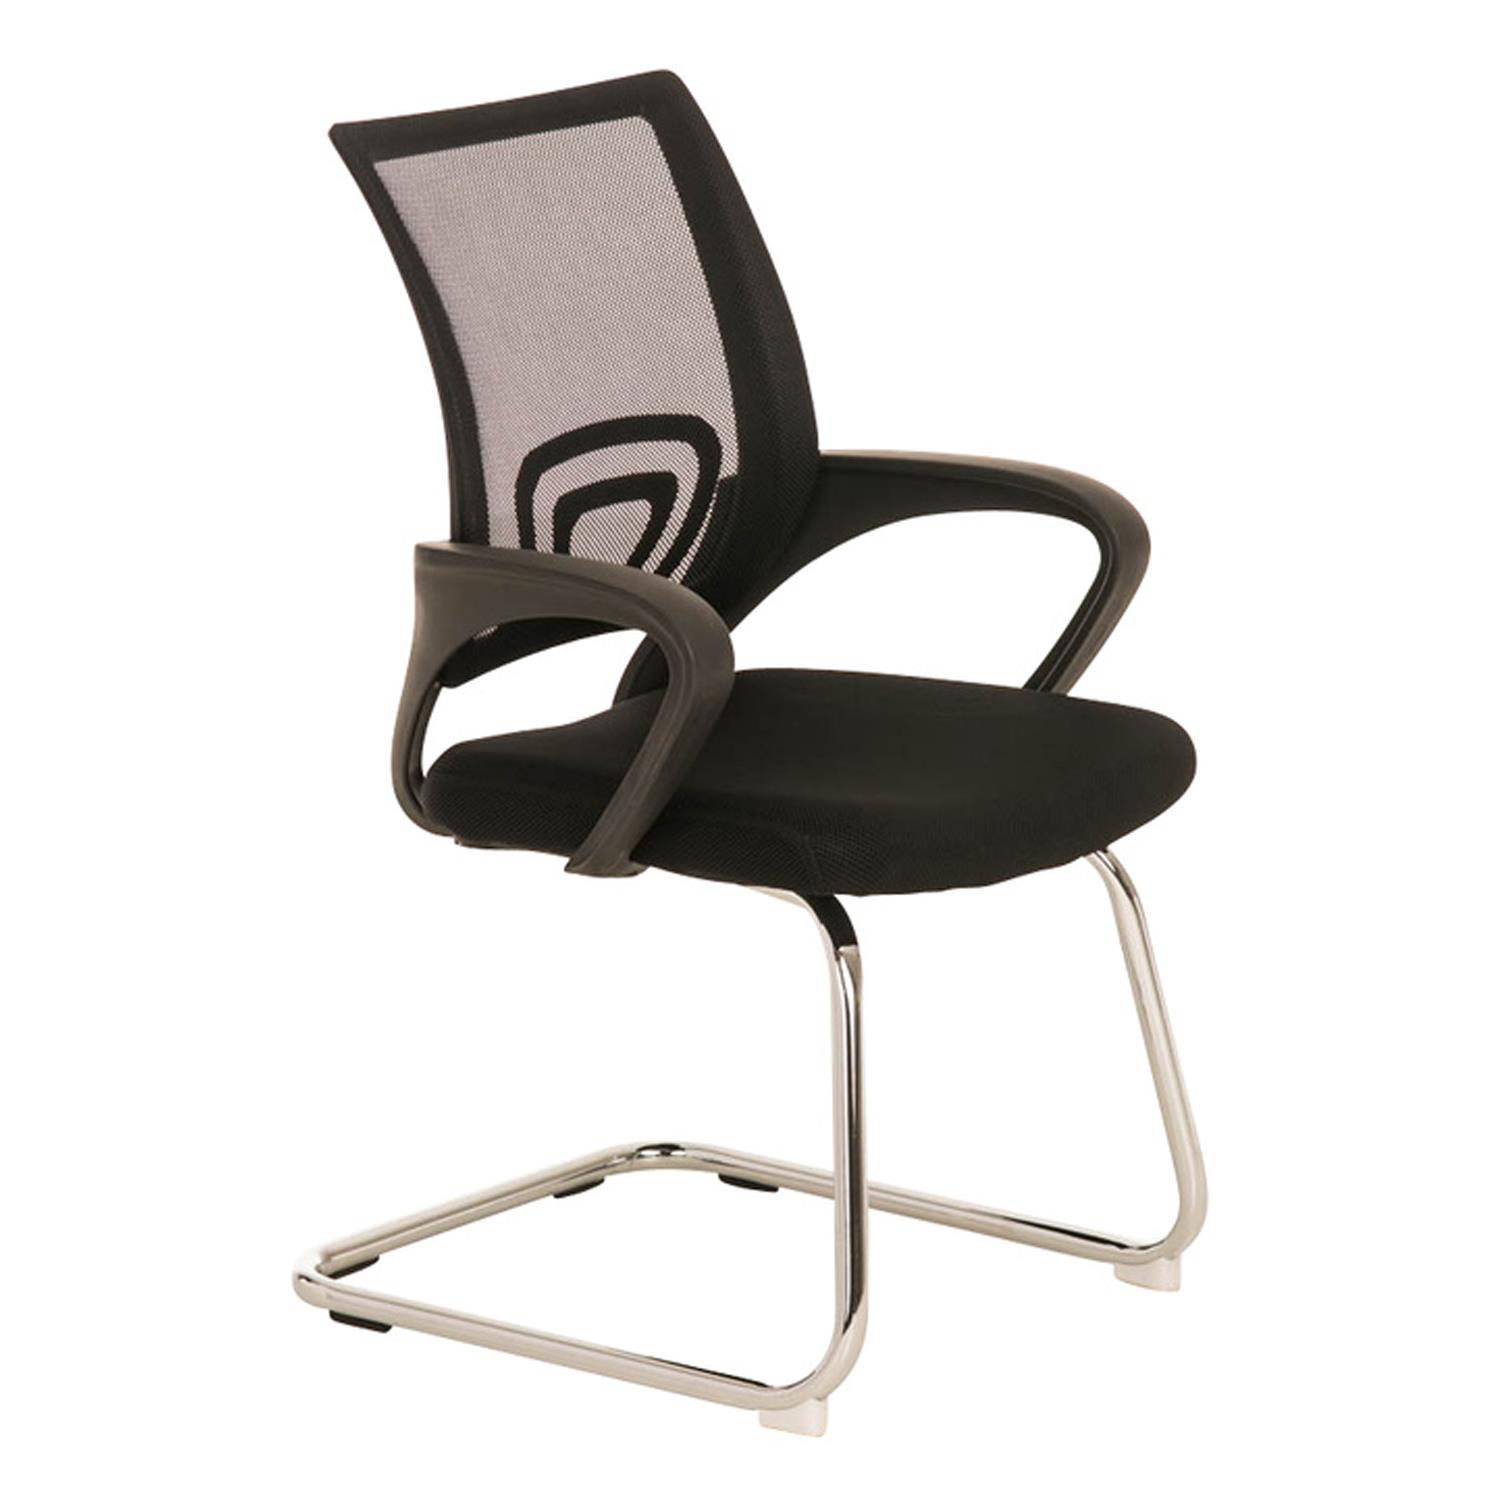 Konferenzstuhl SEOUL V, schönes Design, große gepolsterte Sitzfläche, Farbe Schwarz